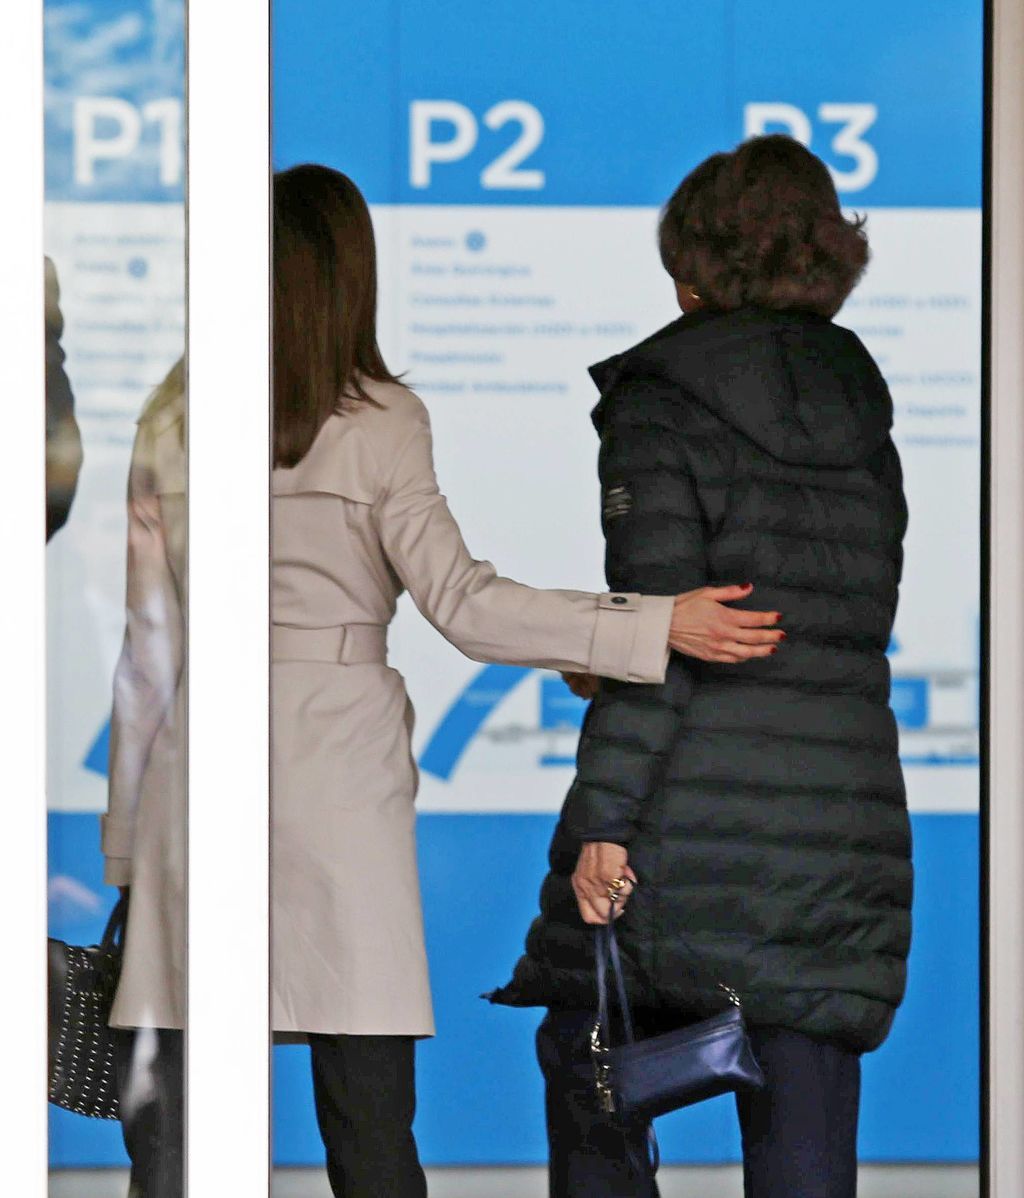 La polémica reaparición de la Reina Letizia y Doña Sofía, al detalle foto a foto